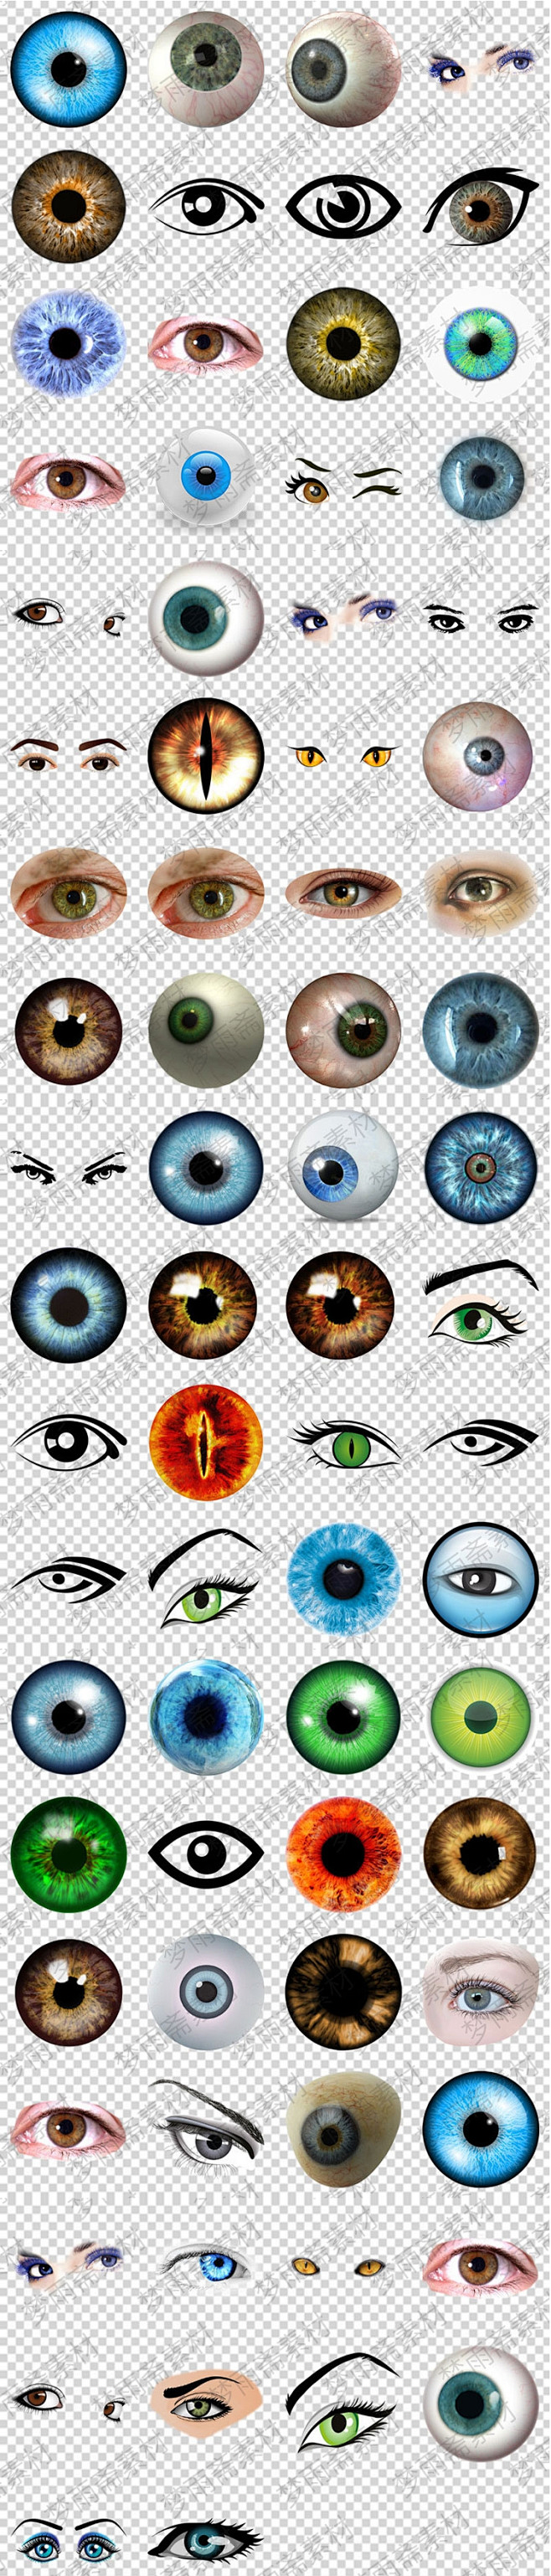 人眼睛眼球眼眶眼珠瞳孔png格式免抠元素透明底图片设计素材淘宝网